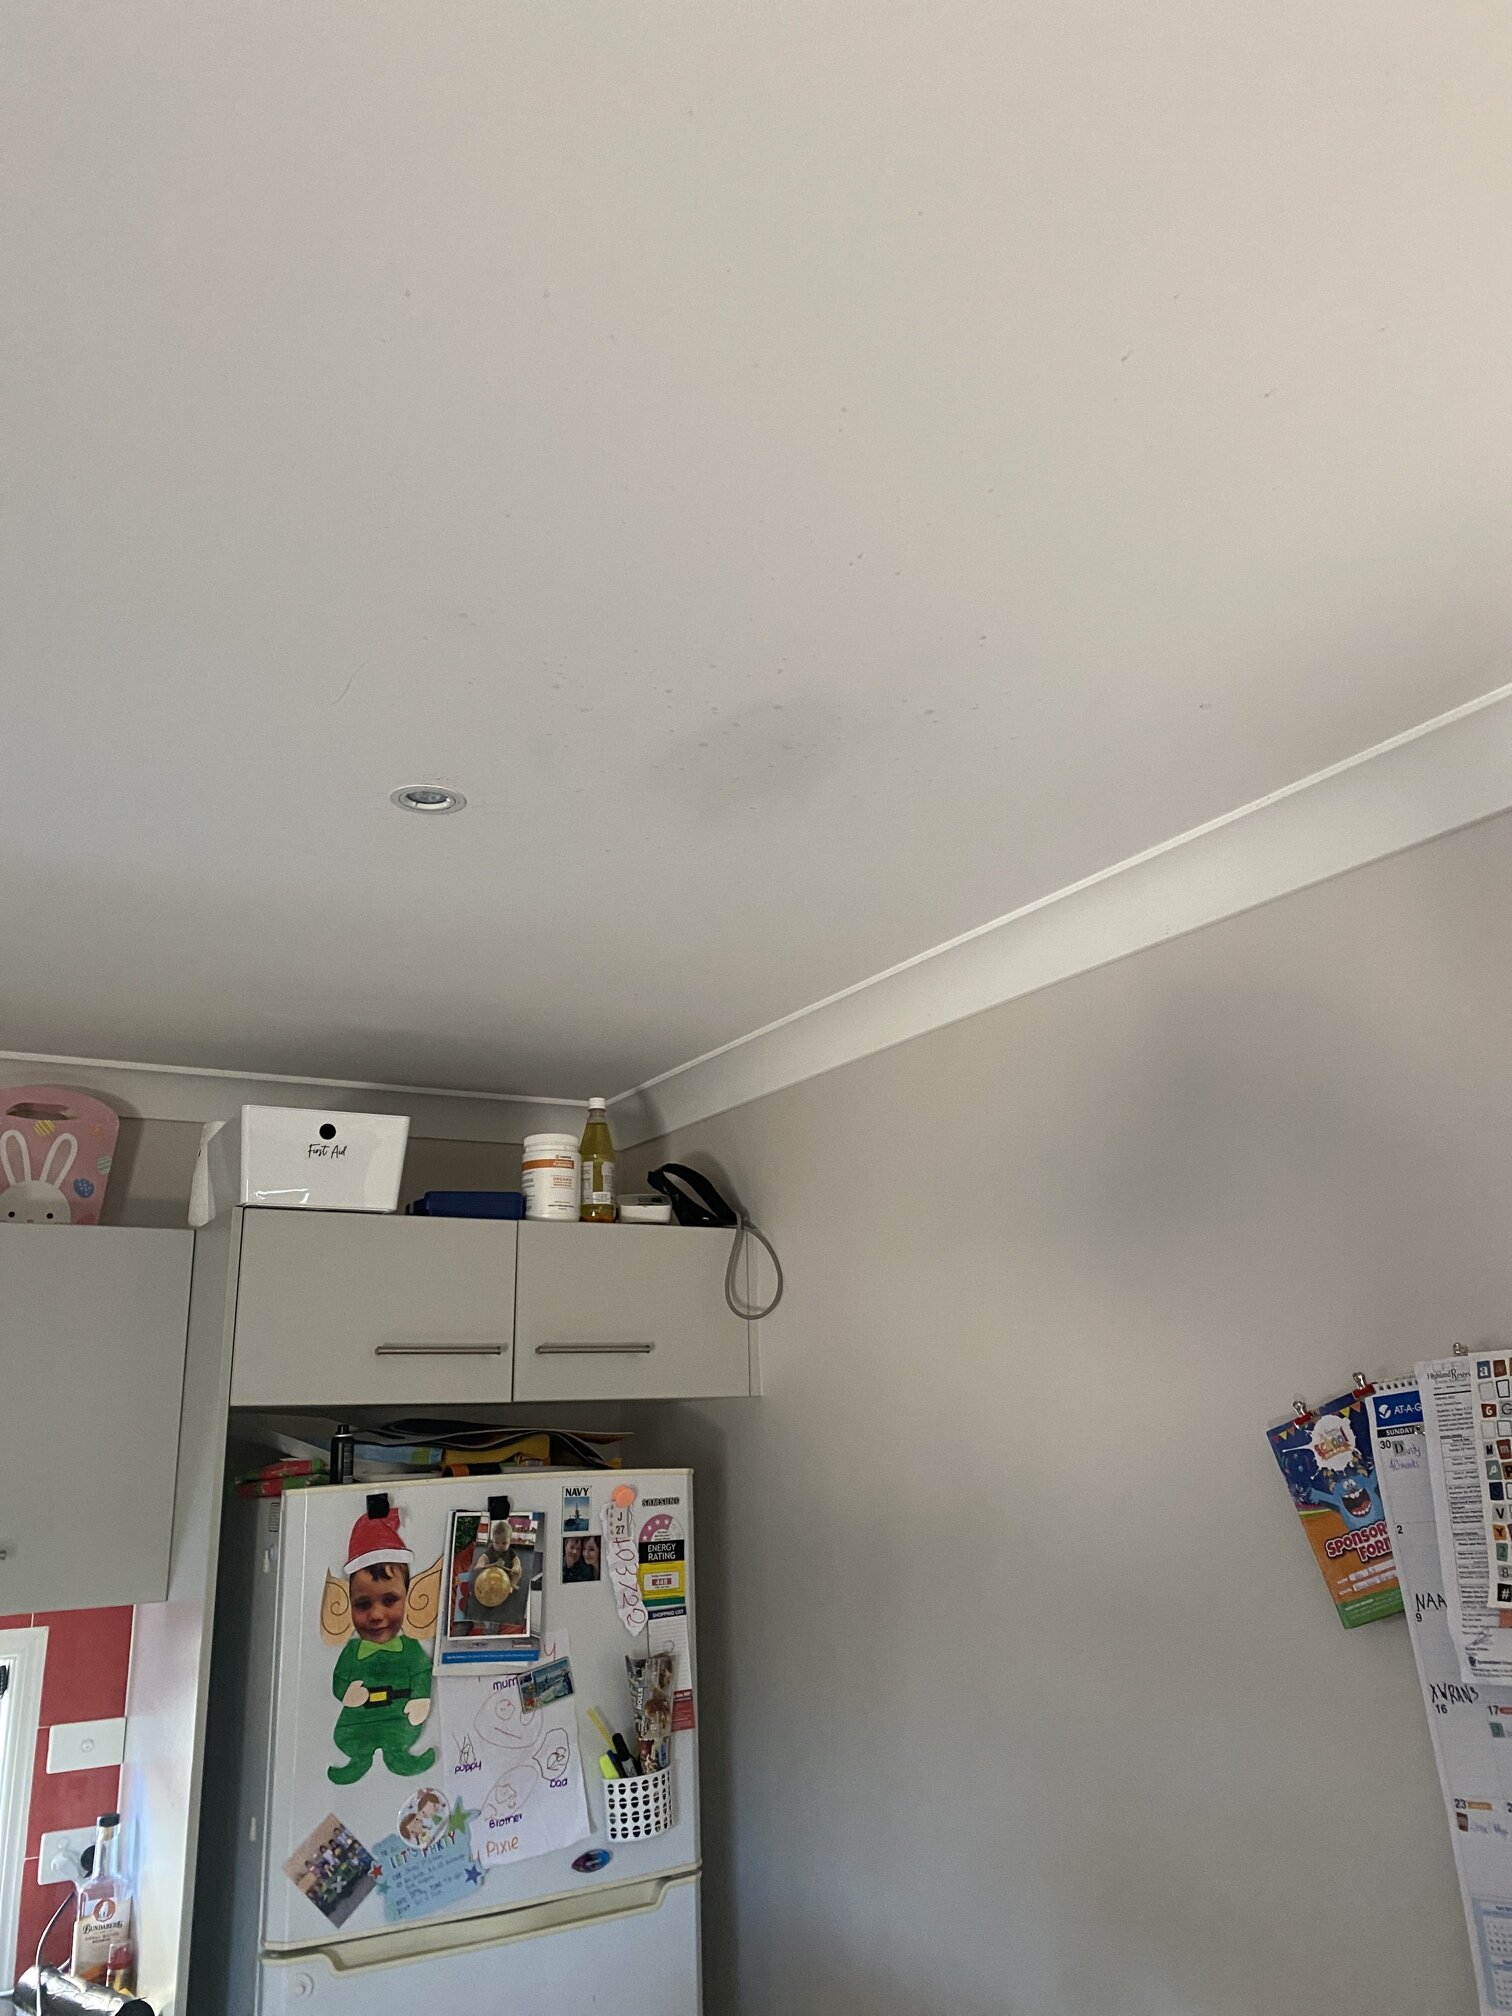 leak in ceiling from shower.jpg